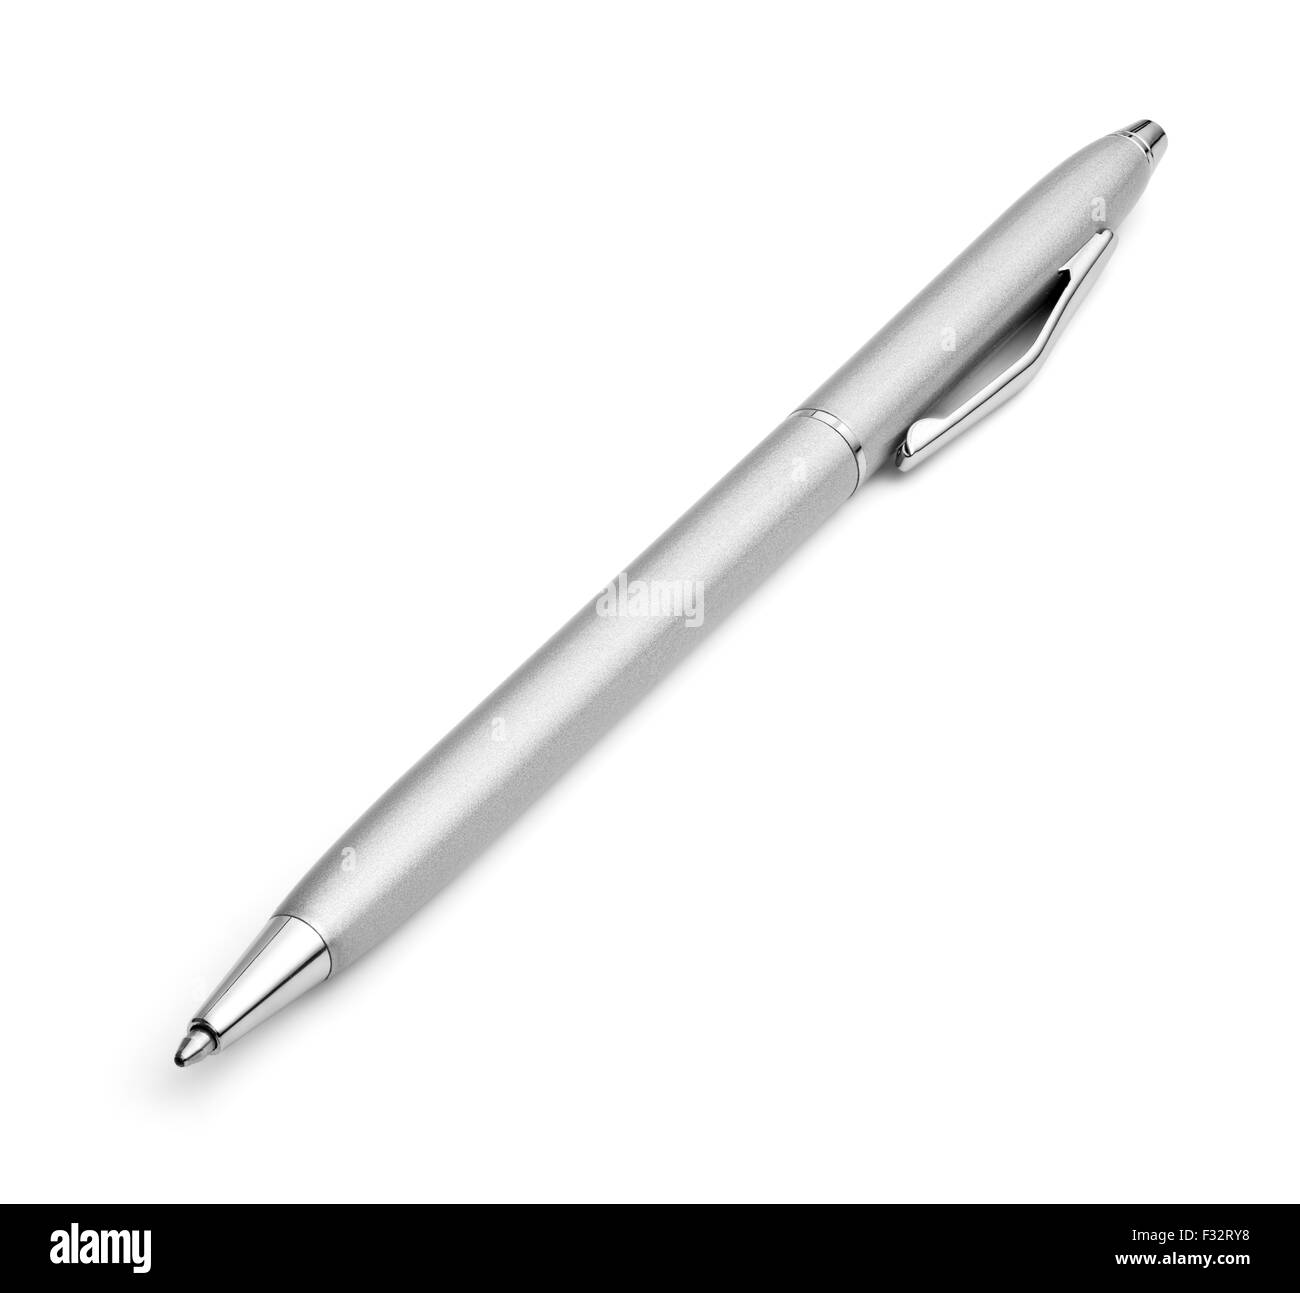 Ballpoint pen on a white background Stock Photo